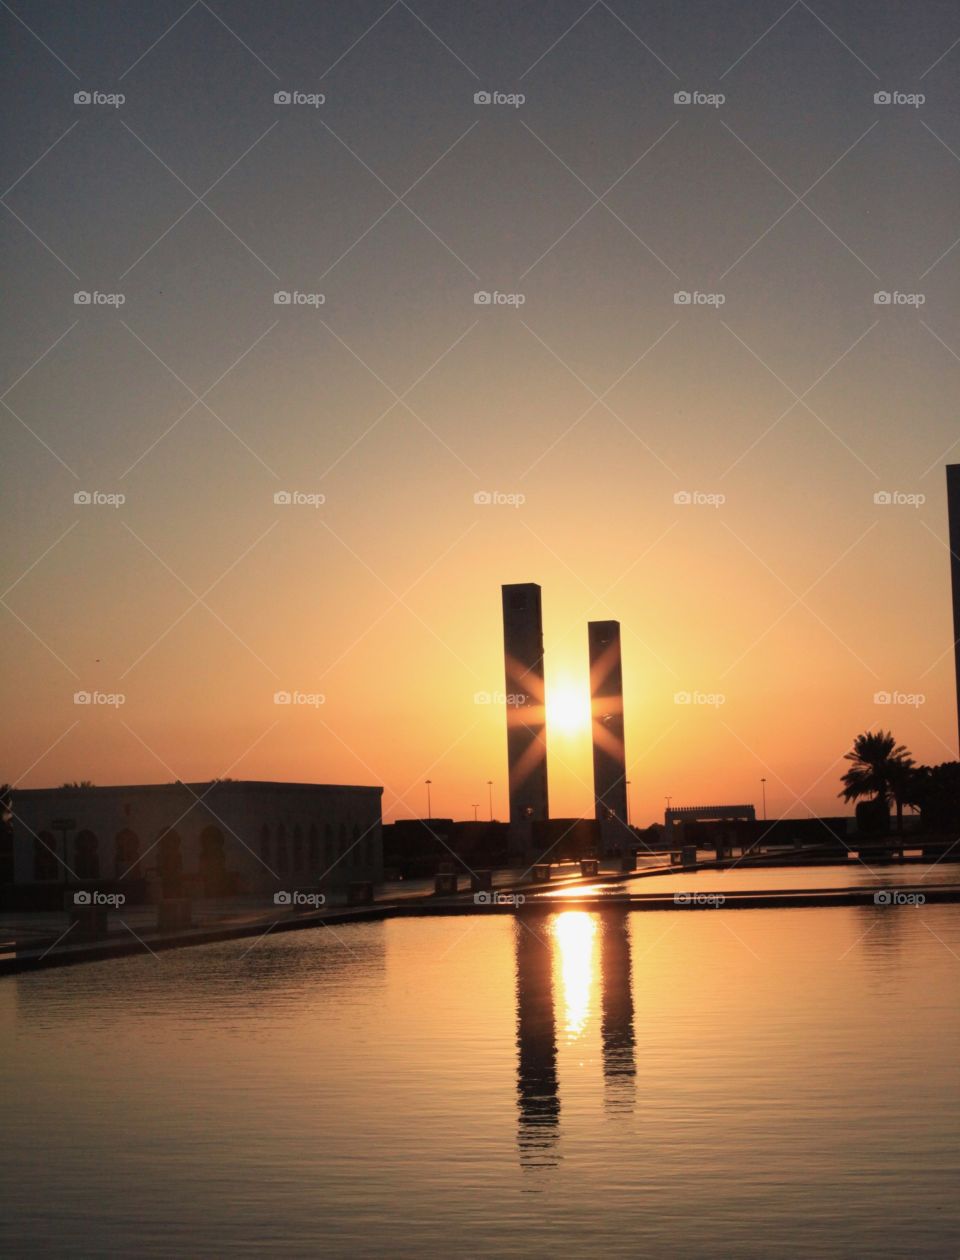 Sunset seen between pillars - Grand Sheikh Zayed Mosque 